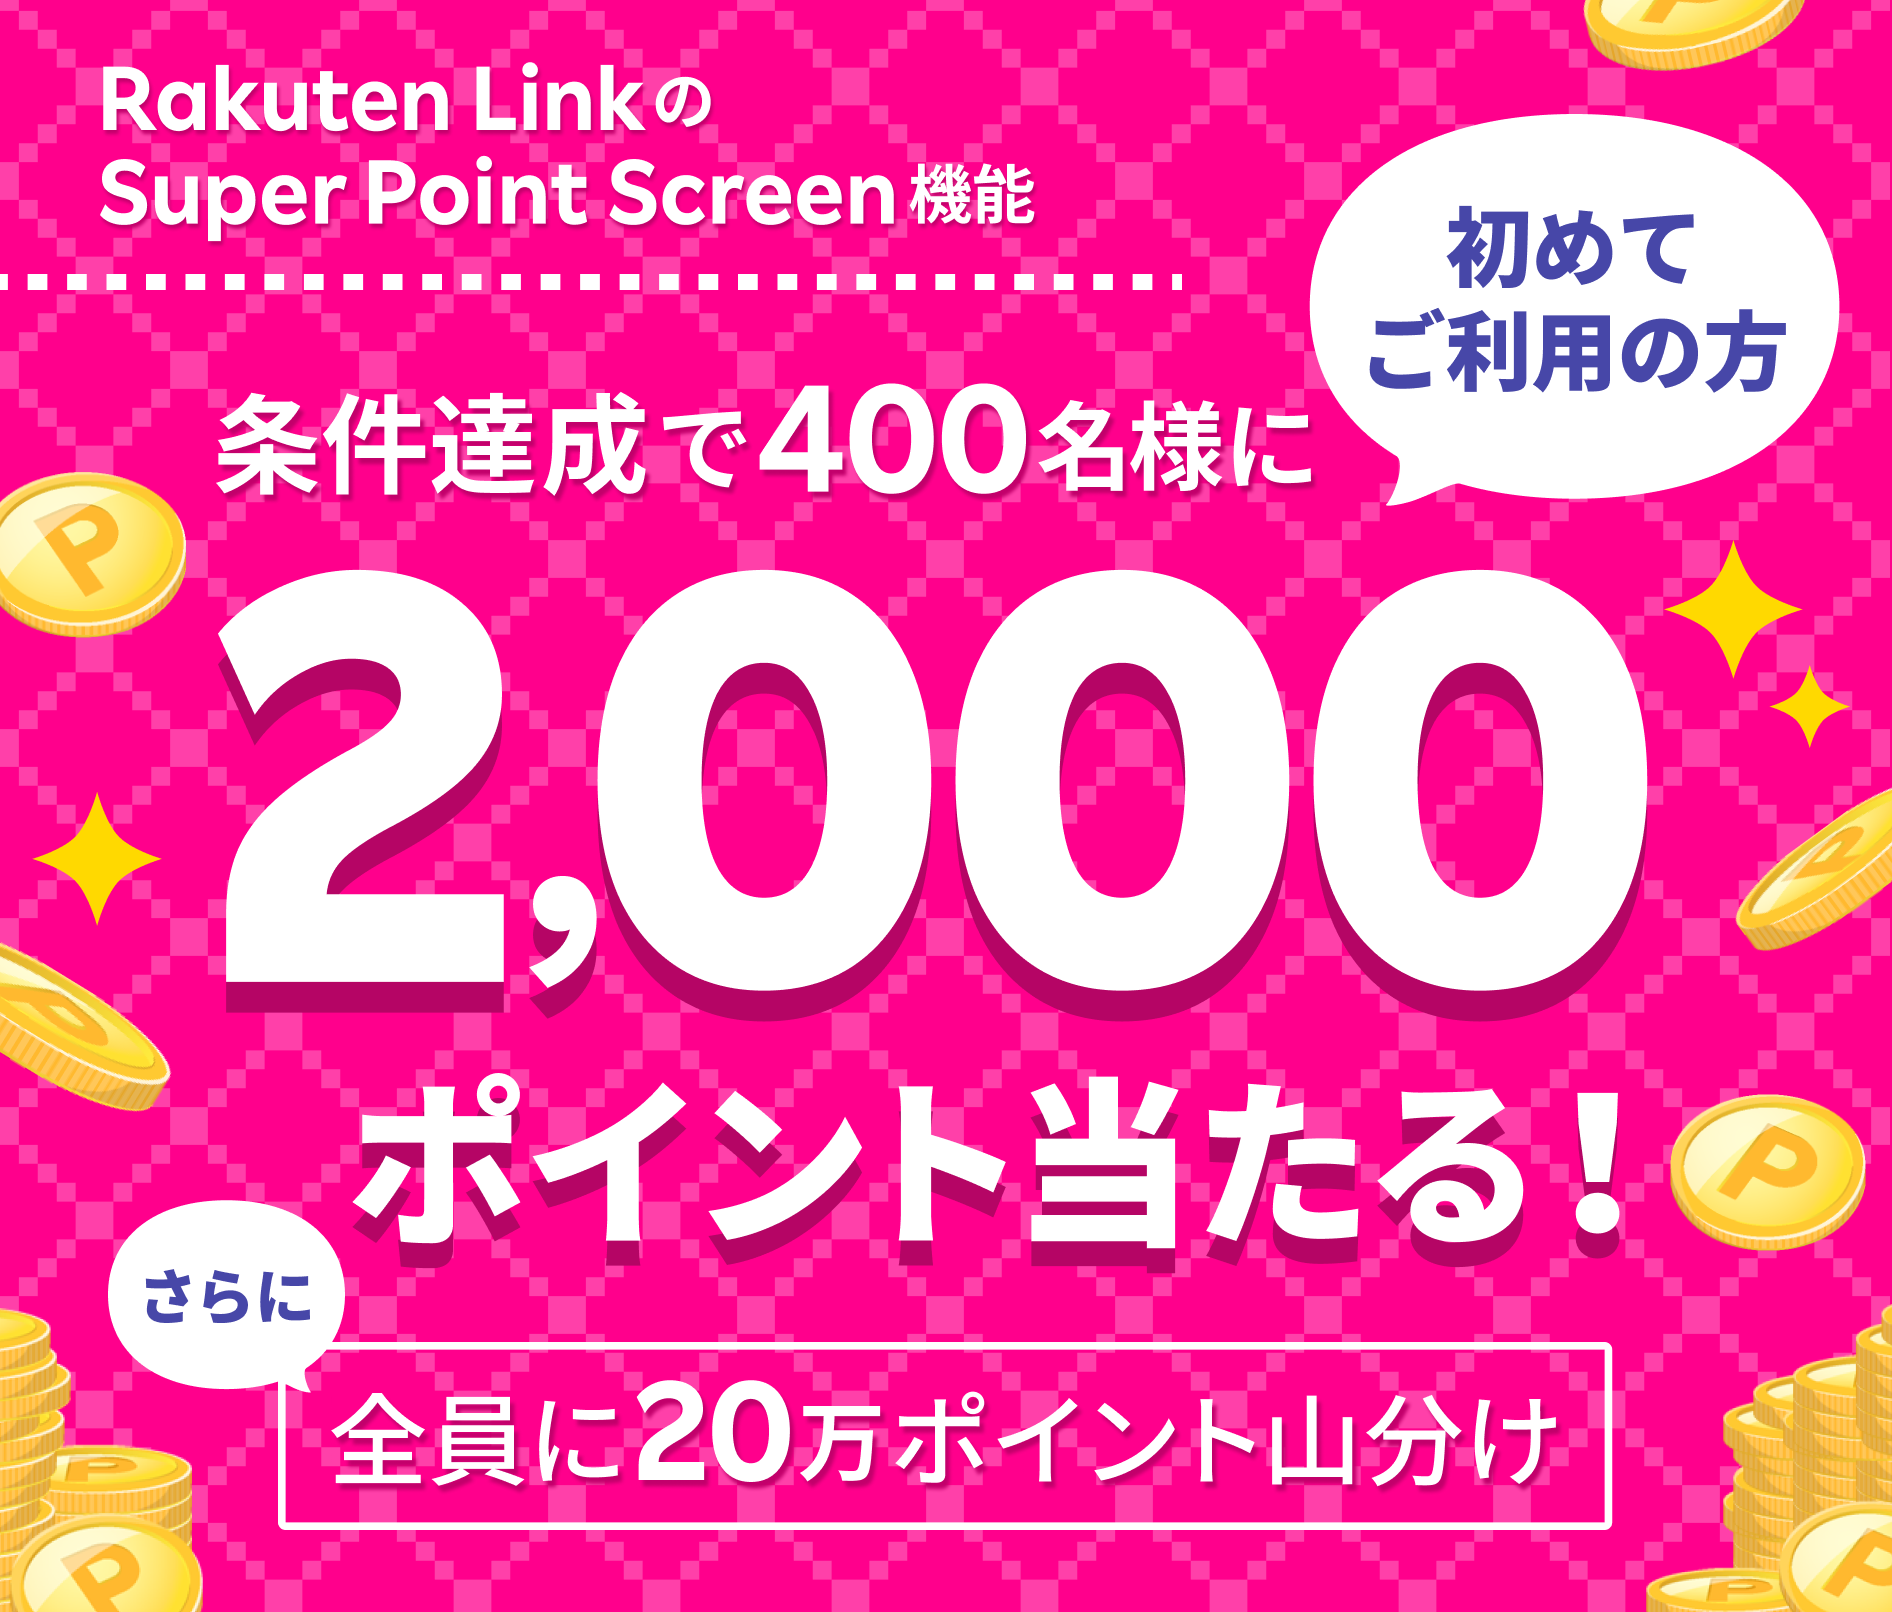 Rakuten Link の Super Point Screen 機能 初めてご利用の方 条件達成で400名様に2,000ポイント当たる！ さらに全員に20万ポイント山分け ※要エントリー